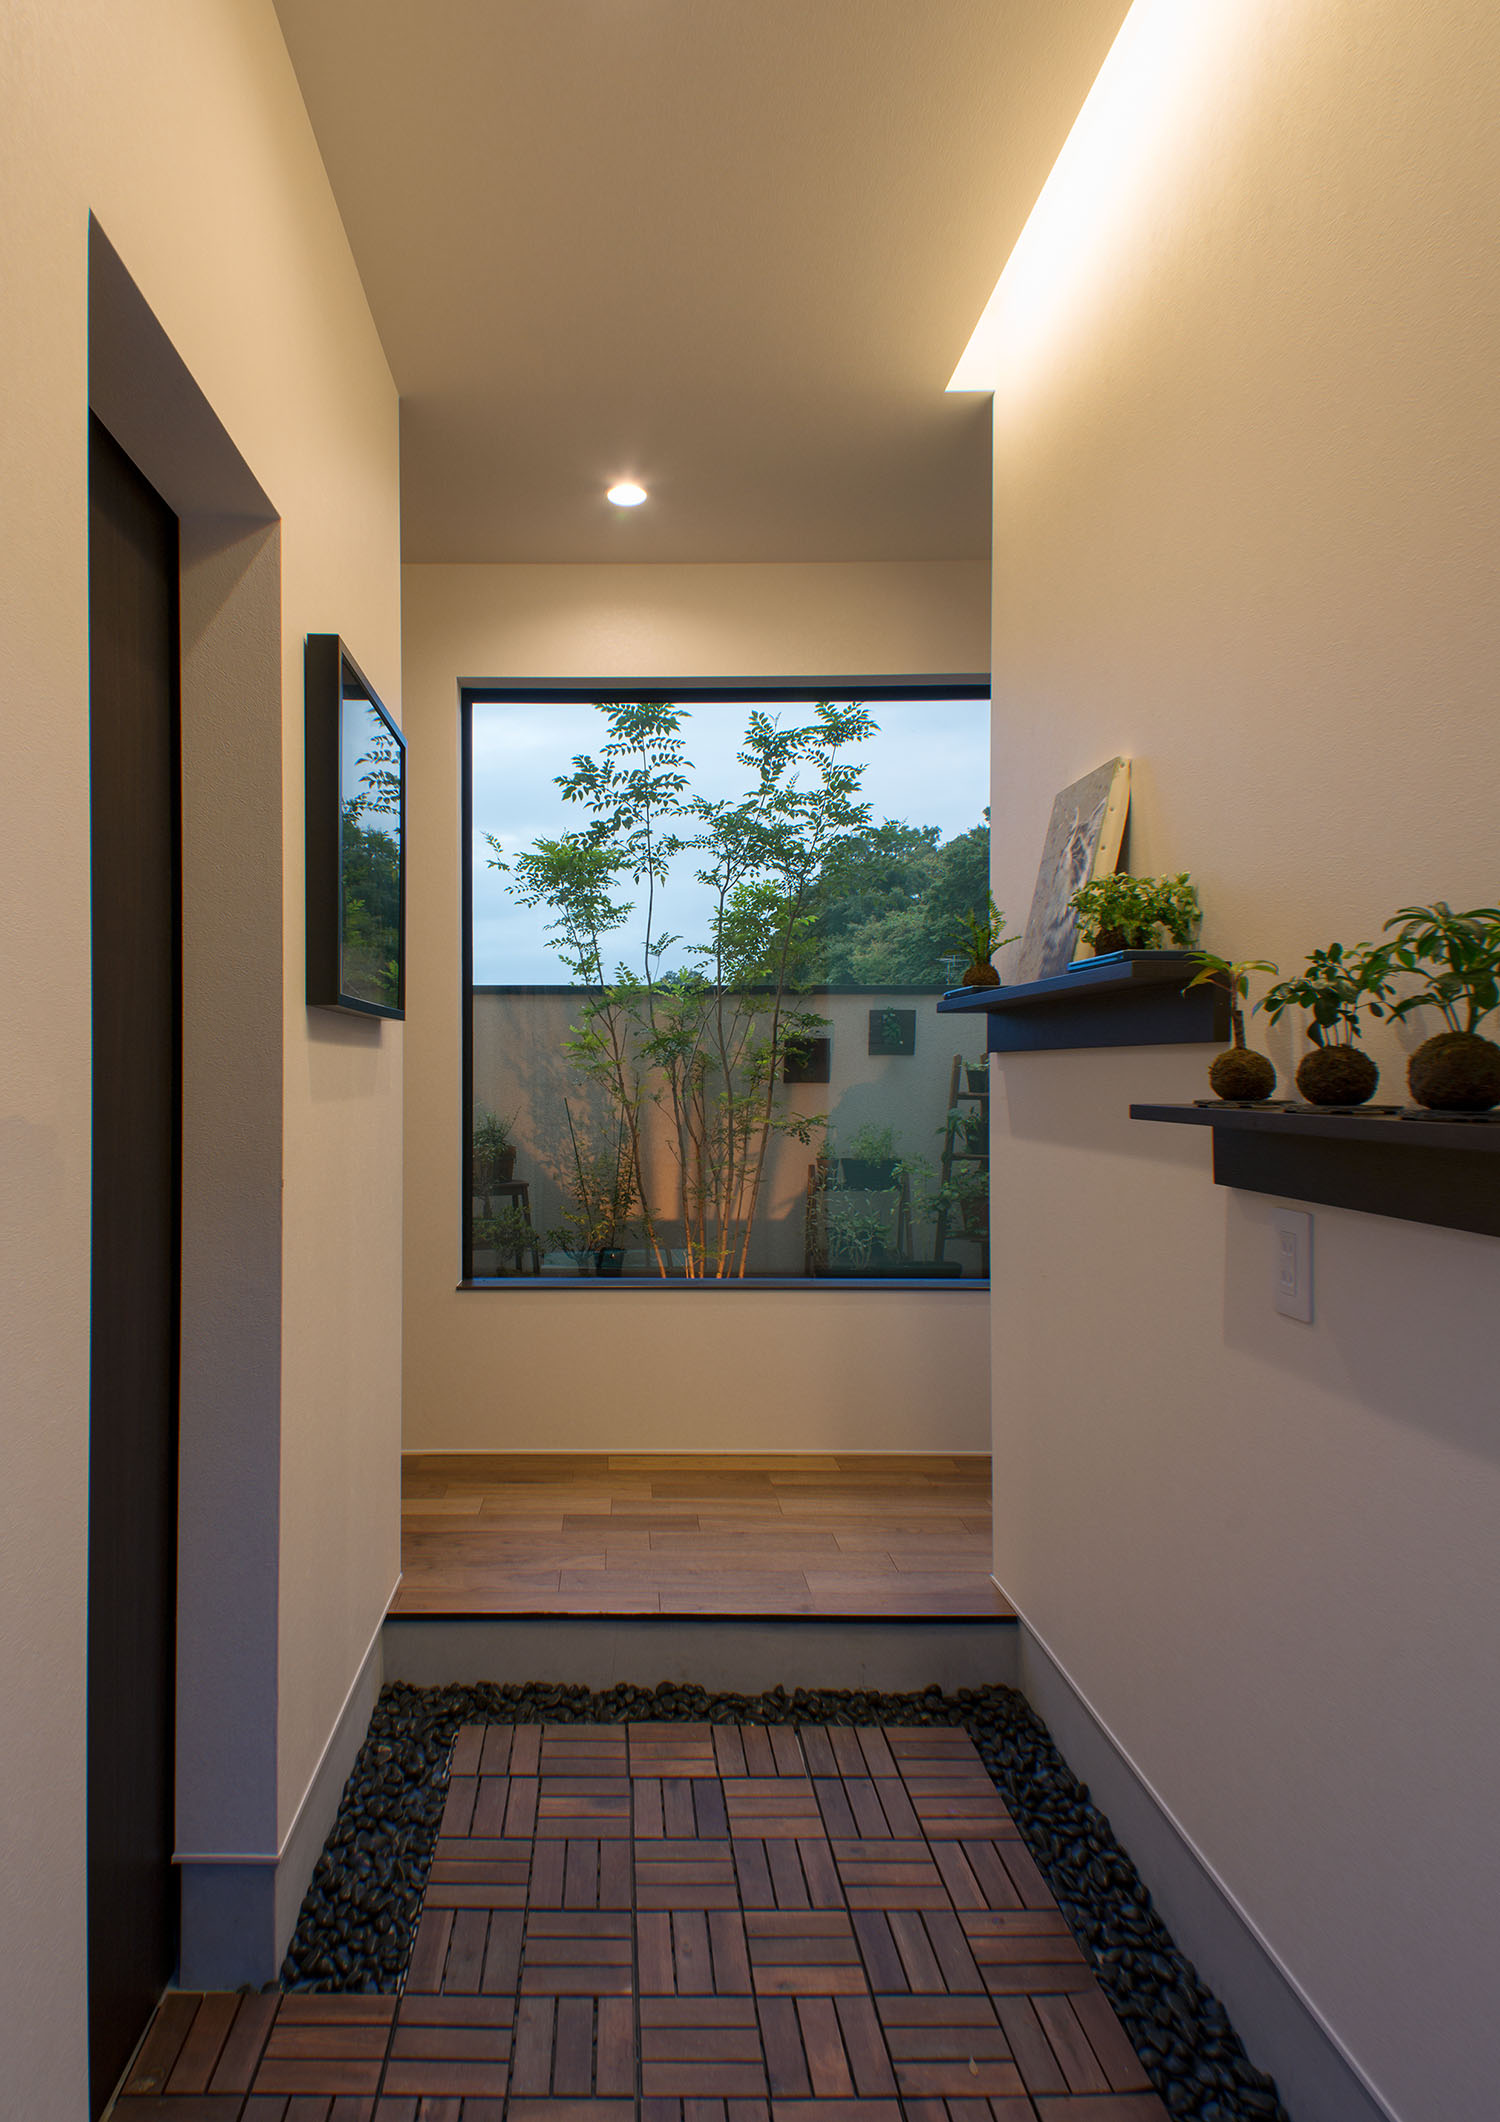 間接照明がついた、正面の窓から植栽が見える玄関・デザイン住宅